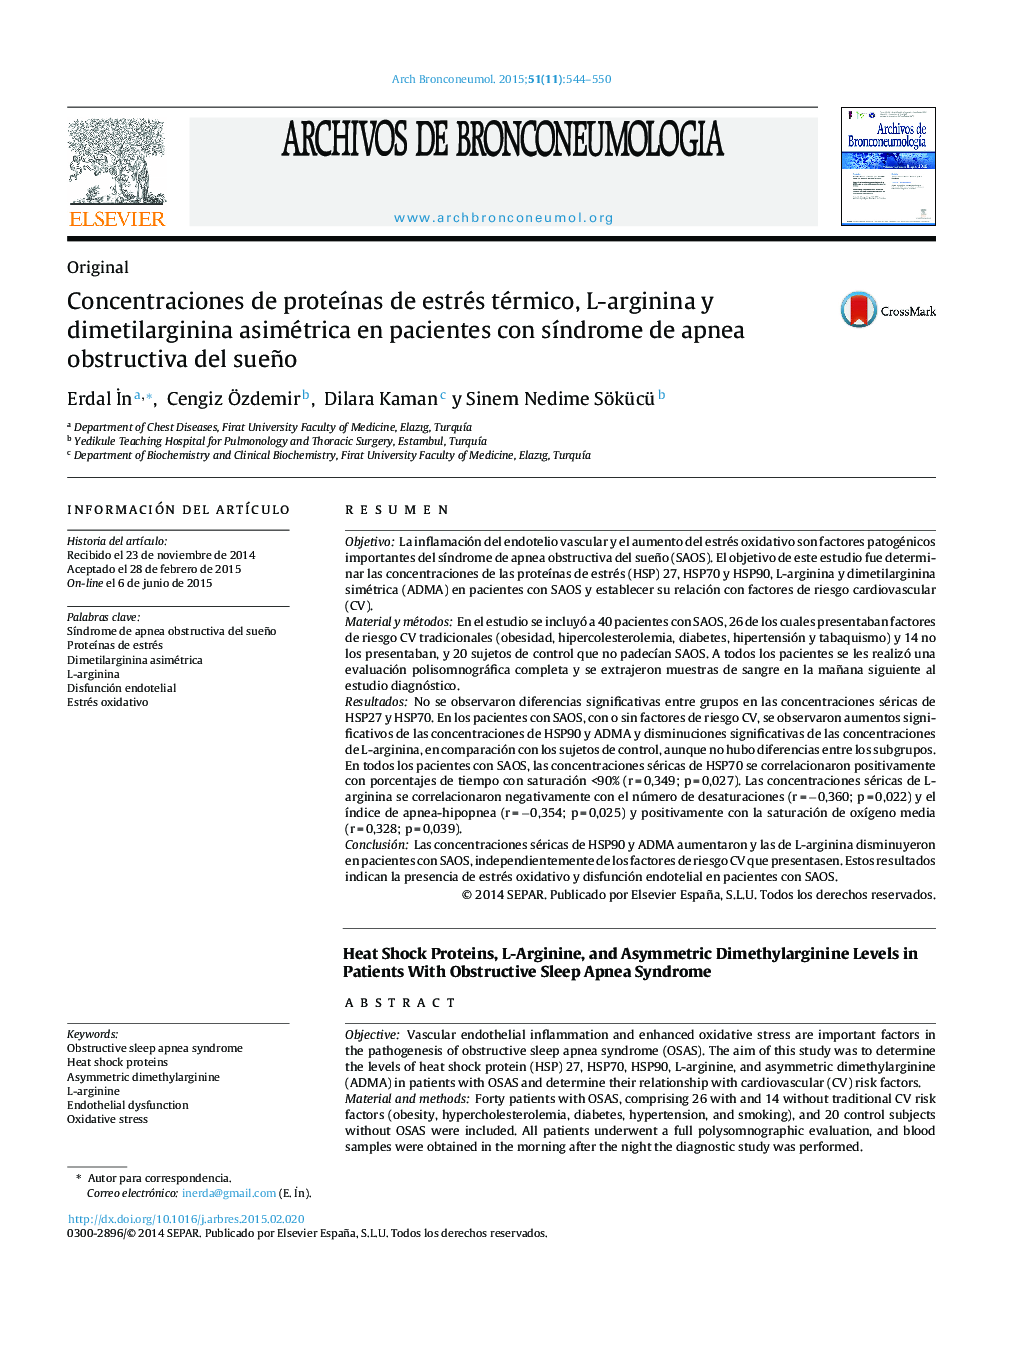 Concentraciones de proteÃ­nas de estrés térmico, L-arginina y dimetilarginina asimétrica en pacientes con sÃ­ndrome de apnea obstructiva del sueño